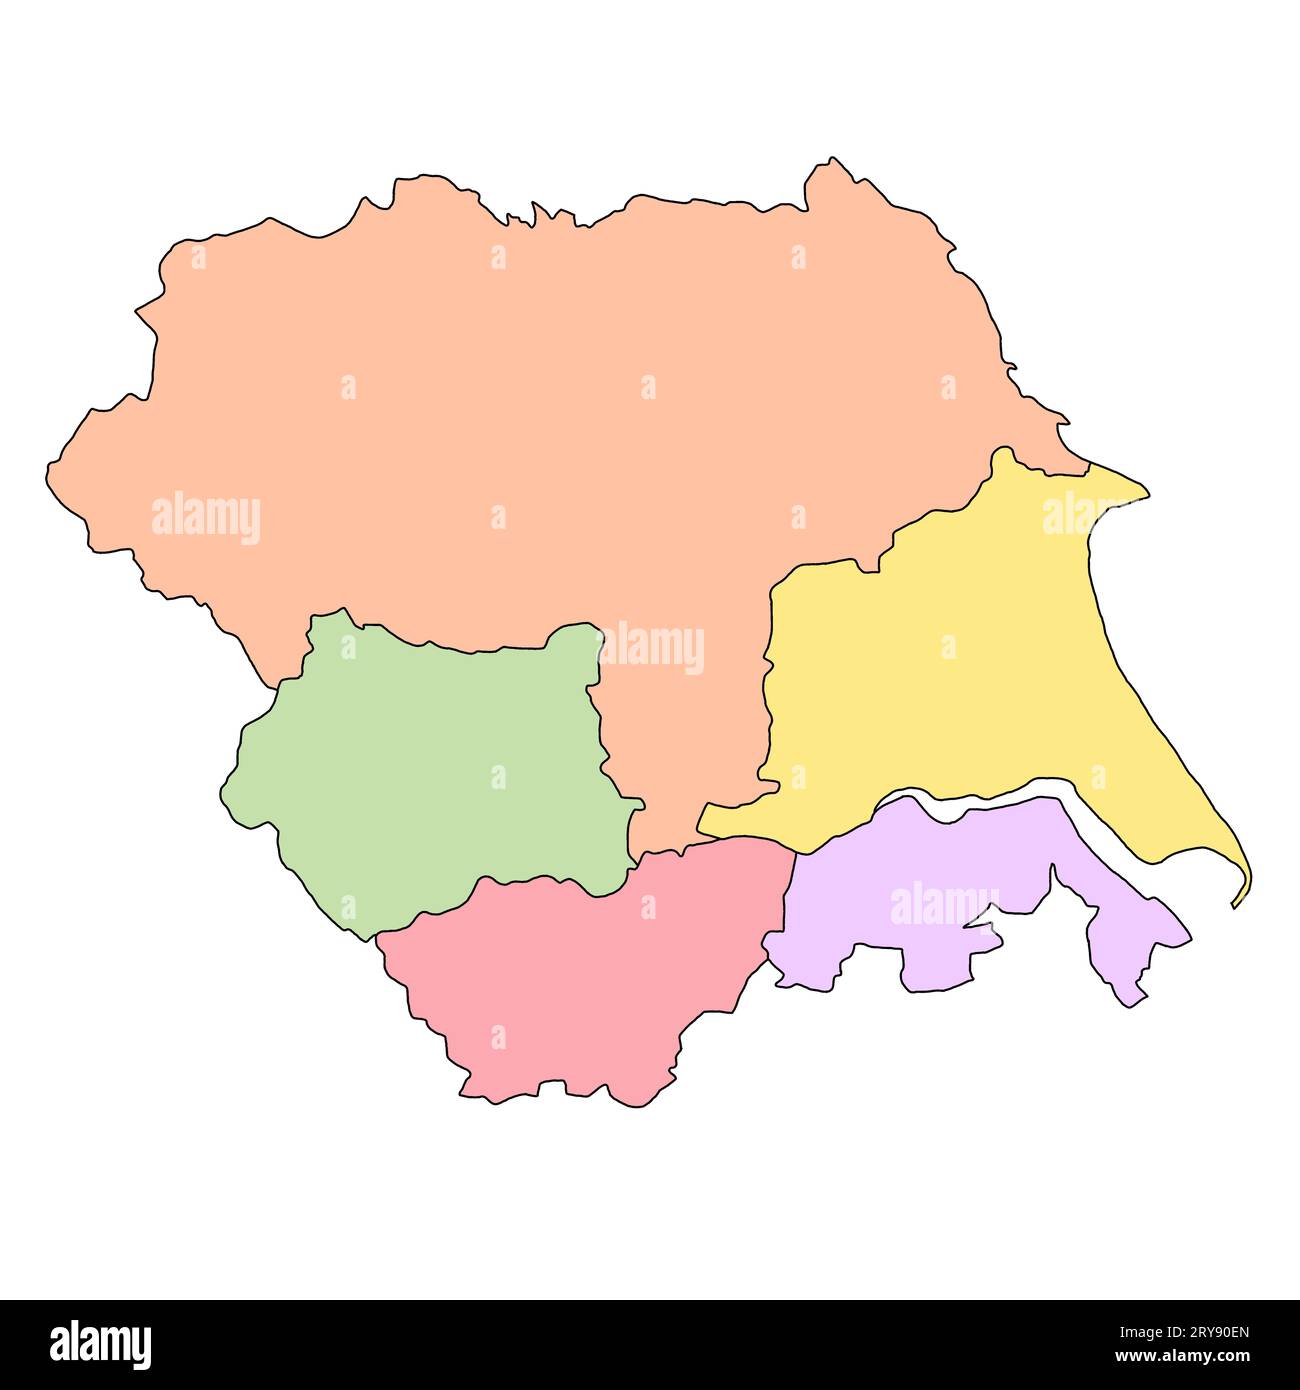 Karte von Yorkshire and the Humber ist eine Region Englands, mit Grenzen der zeremoniellen Grafschaften und verschiedenen Farben. Stockfoto